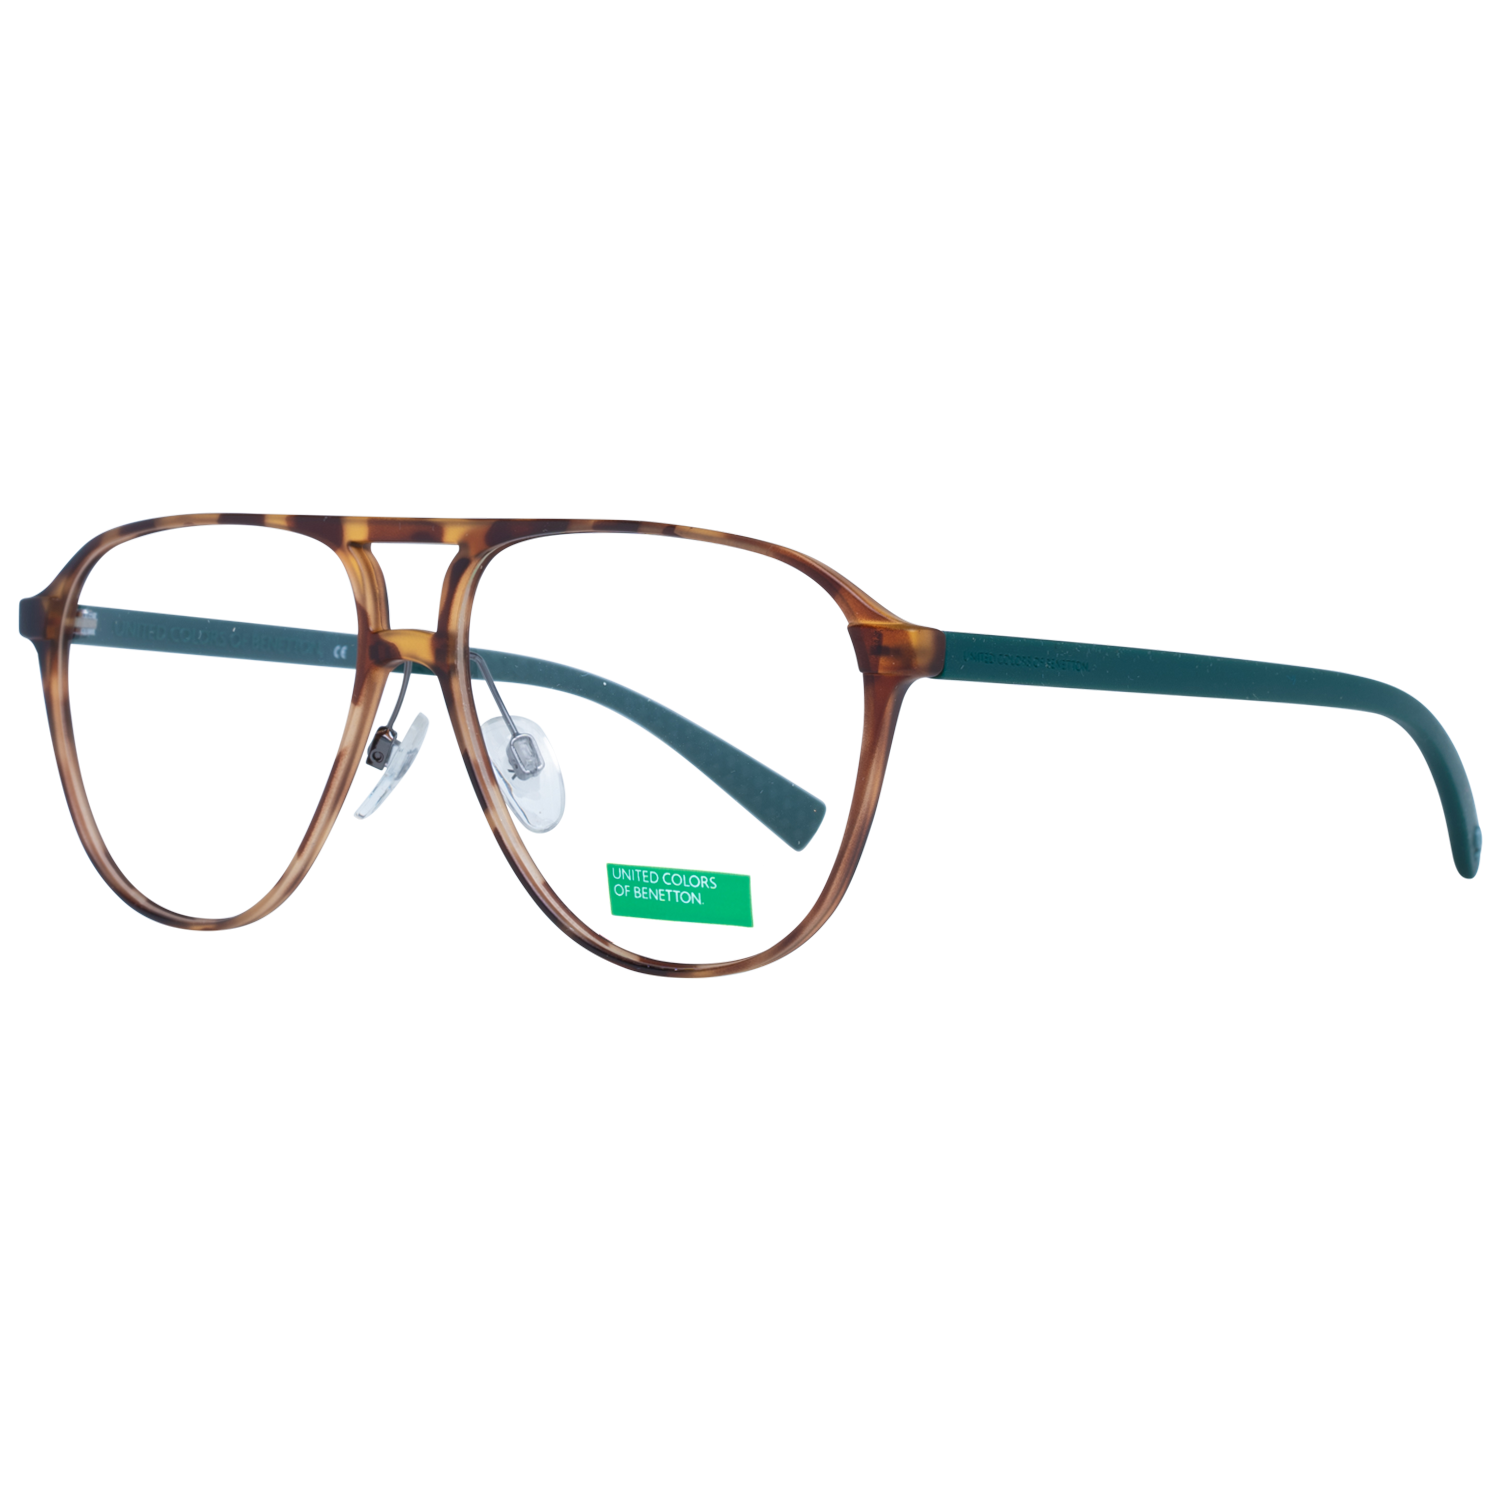 Benetton Frames Benetton Glasses Frames BEO1008 112 56 Eyeglasses Eyewear UK USA Australia 